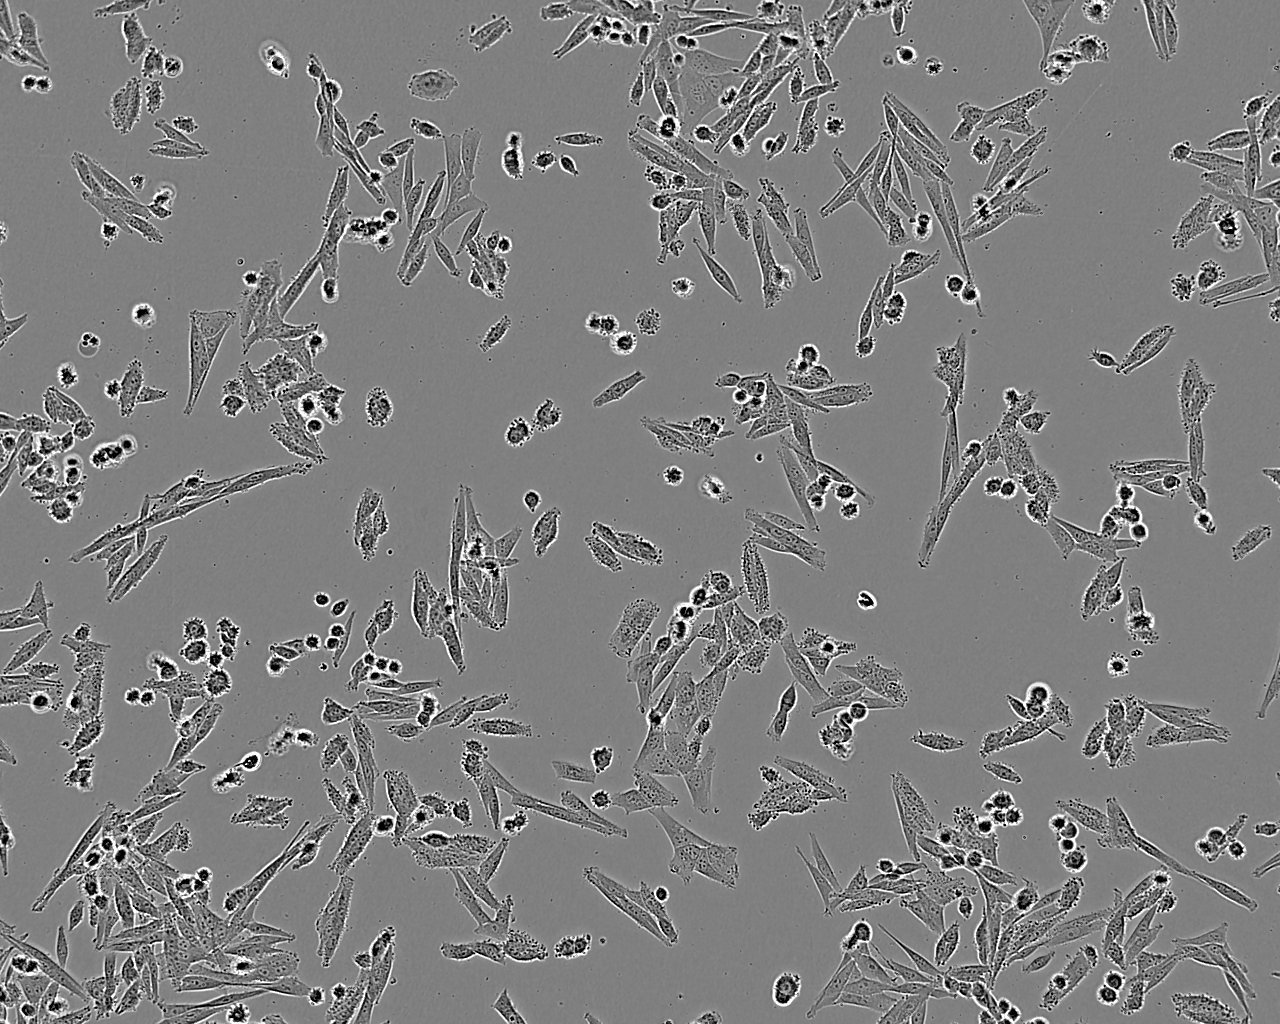 MC3T3-E1 epithelioid cells小鼠胚胎成骨细胞前体细胞系,MC3T3-E1 epithelioid cells